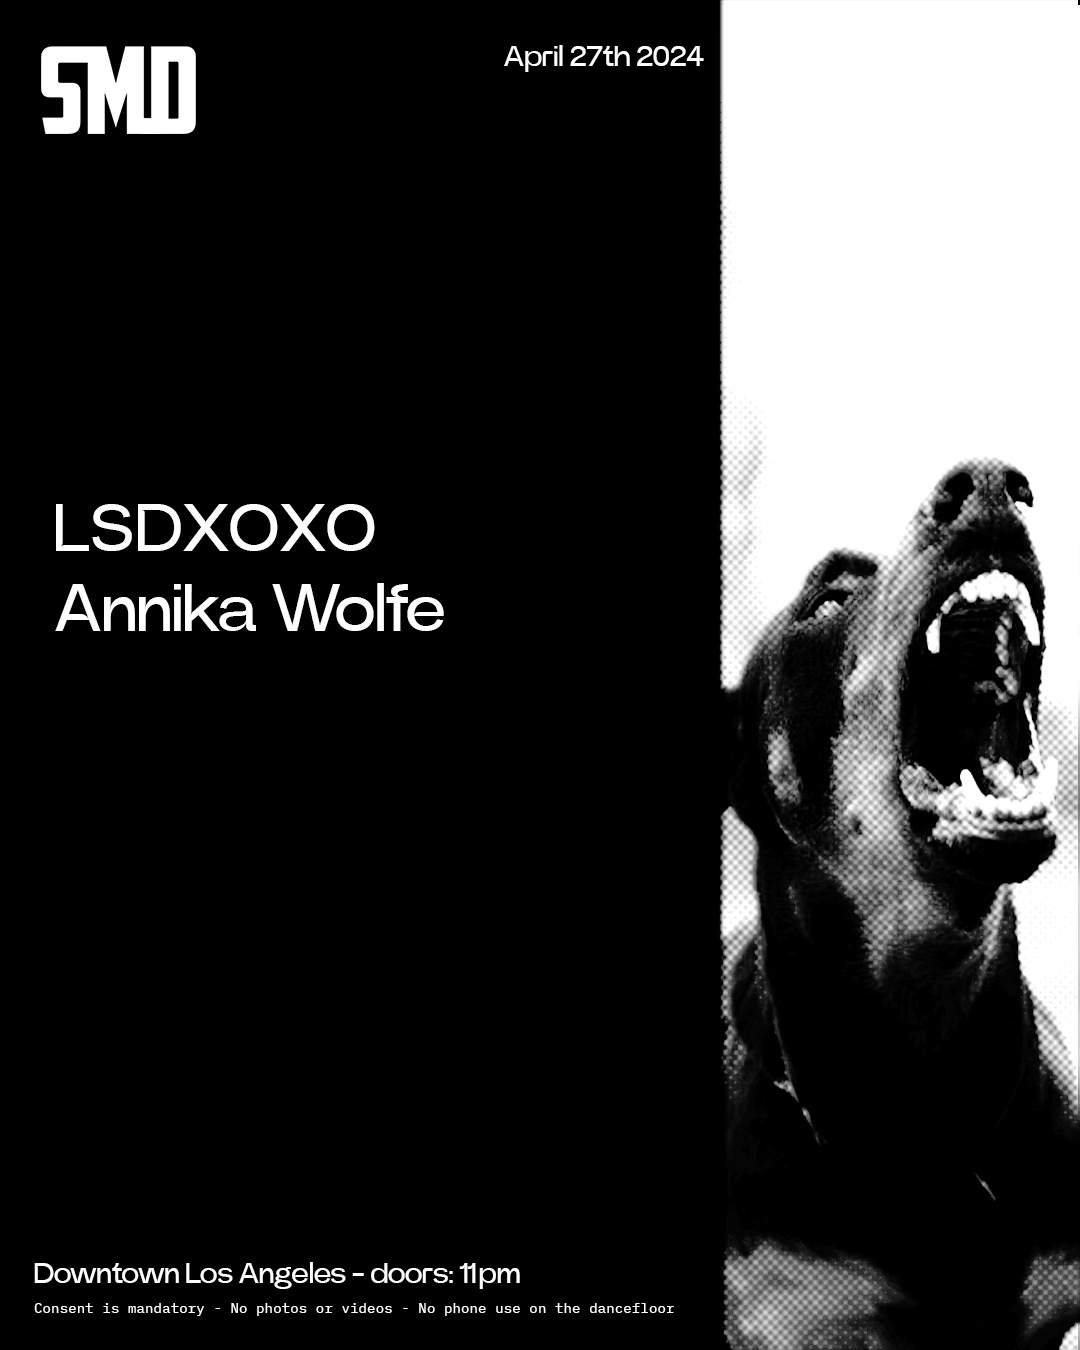 SMD - LSDXOXO & Annika Wolfe - フライヤー表